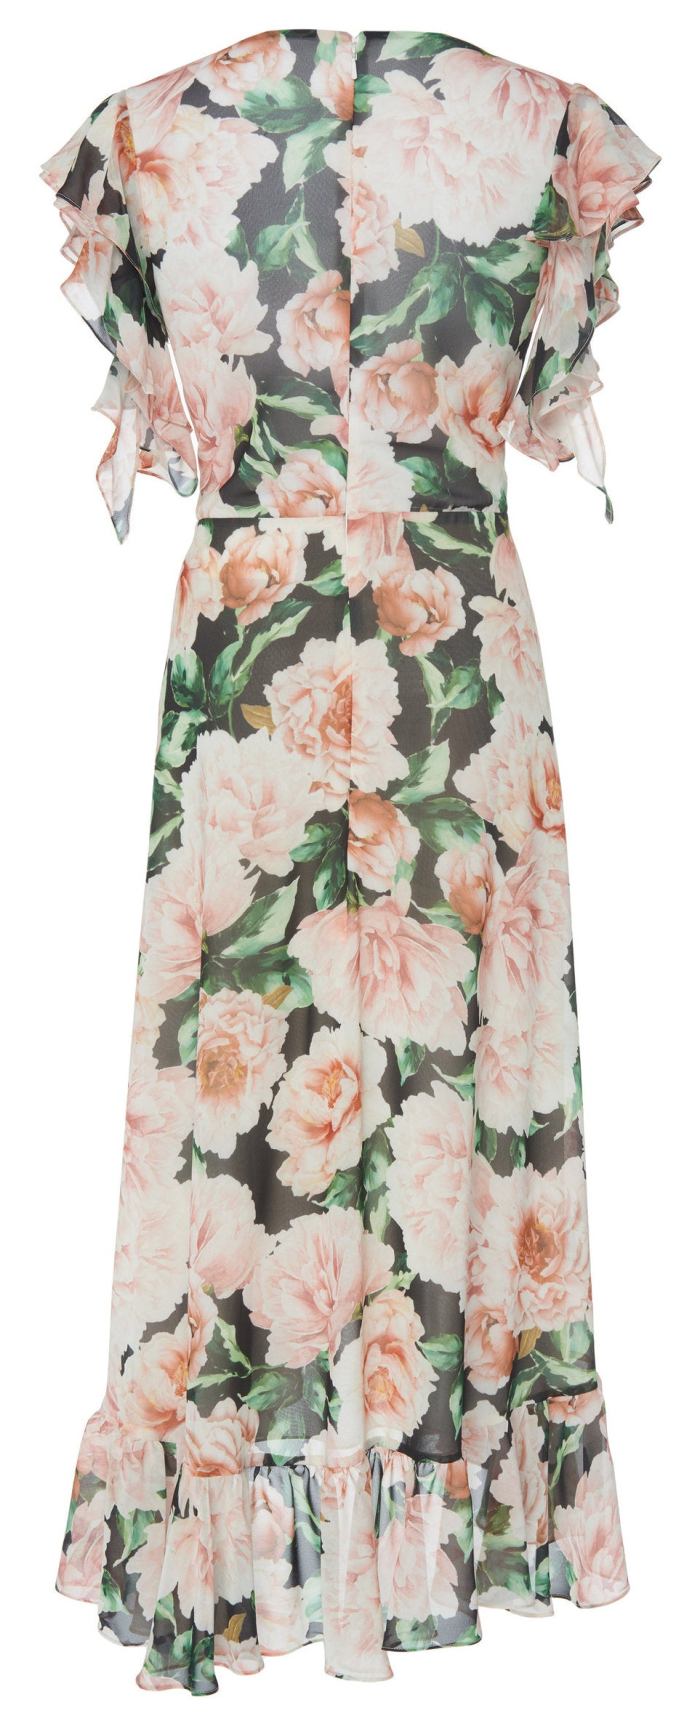 Floral-Patterned Georgette Dress DESIGNER INSPIRED FASHIONS